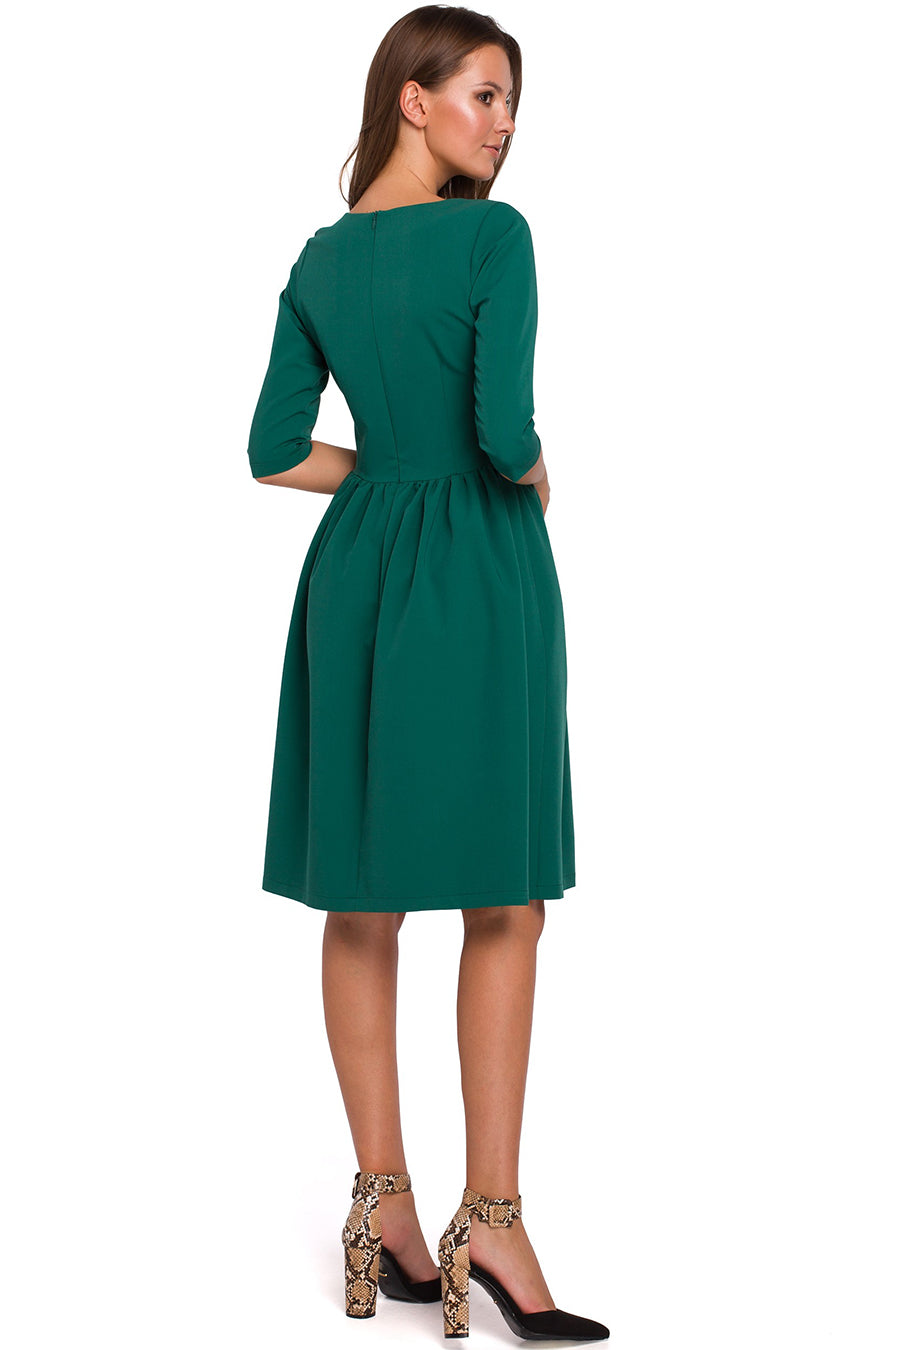 Γυναικείο φόρεμα Tasha, Πράσινο 2